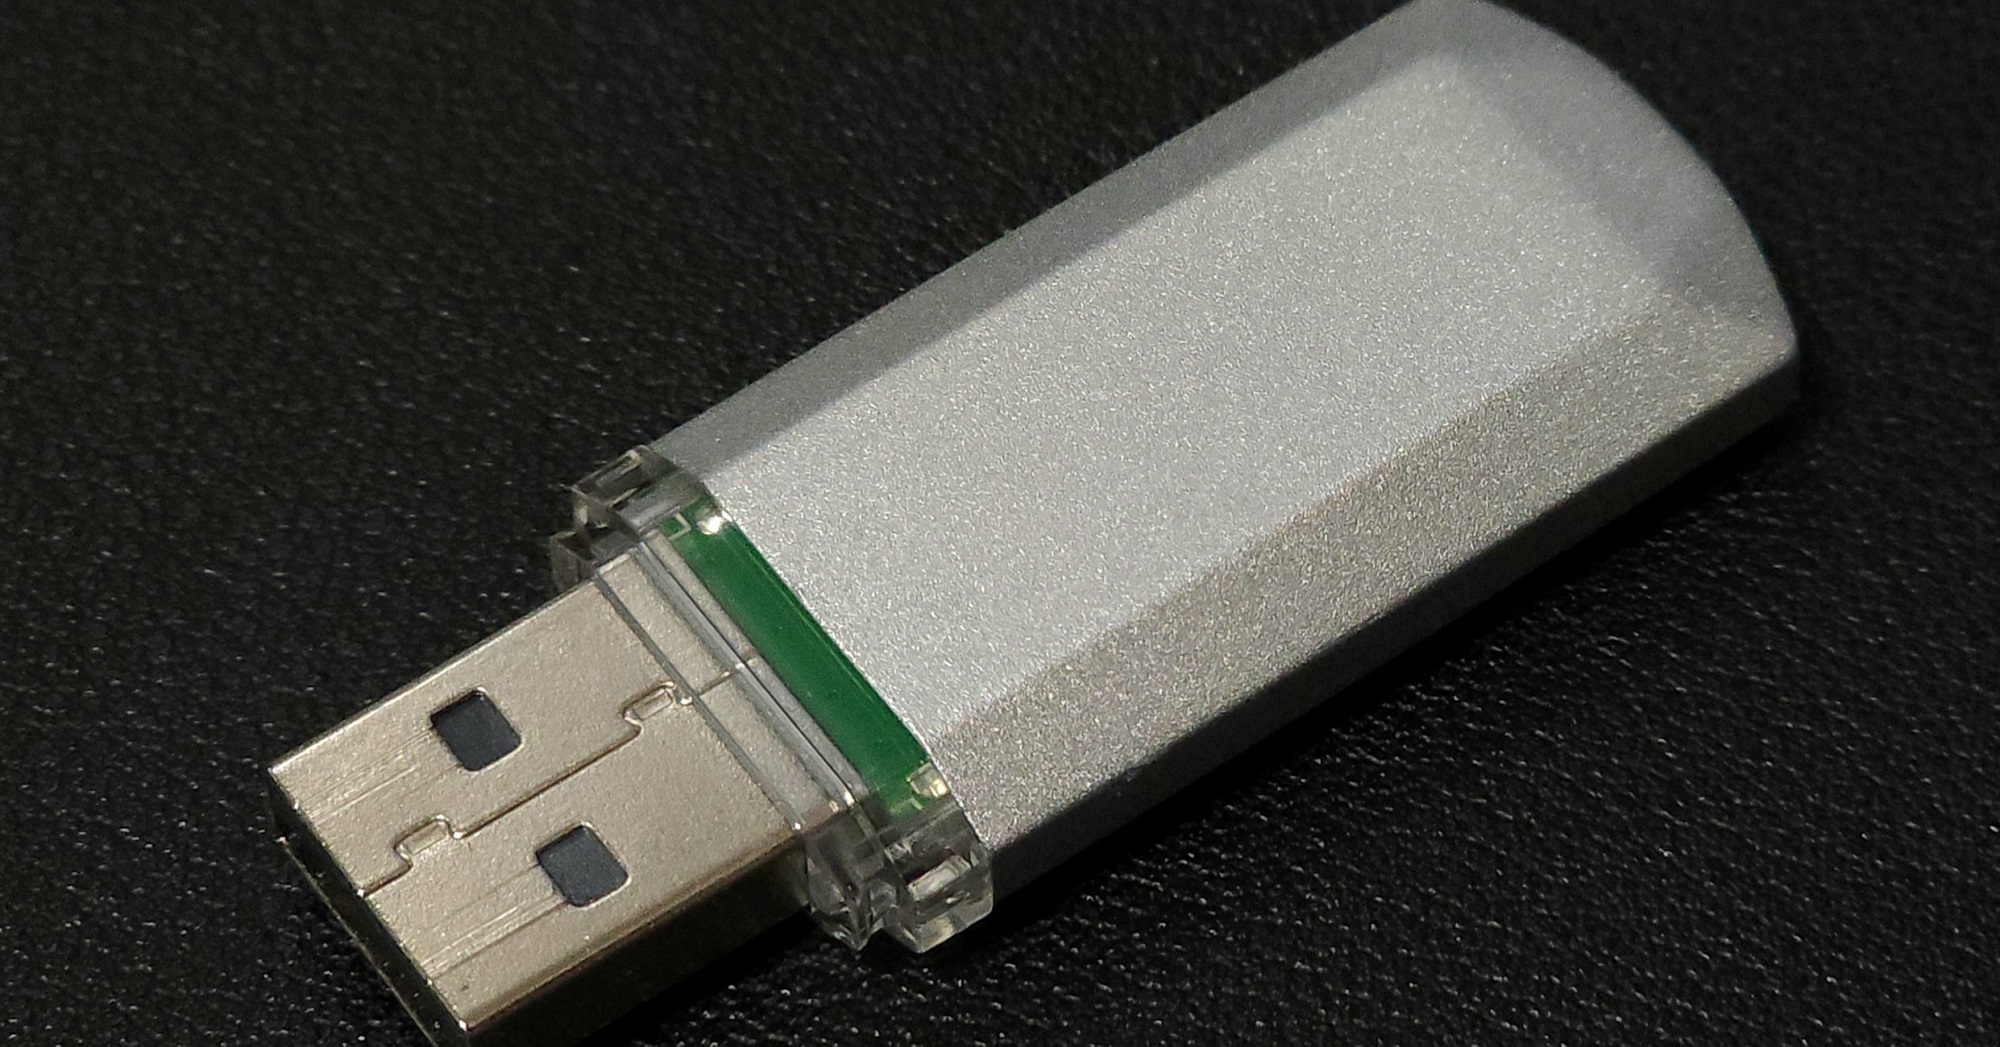 USBメモリ紛失の尼崎市、記者会見でパスワードの桁数暴露　ネット騒然　「悪例として最高の手本」